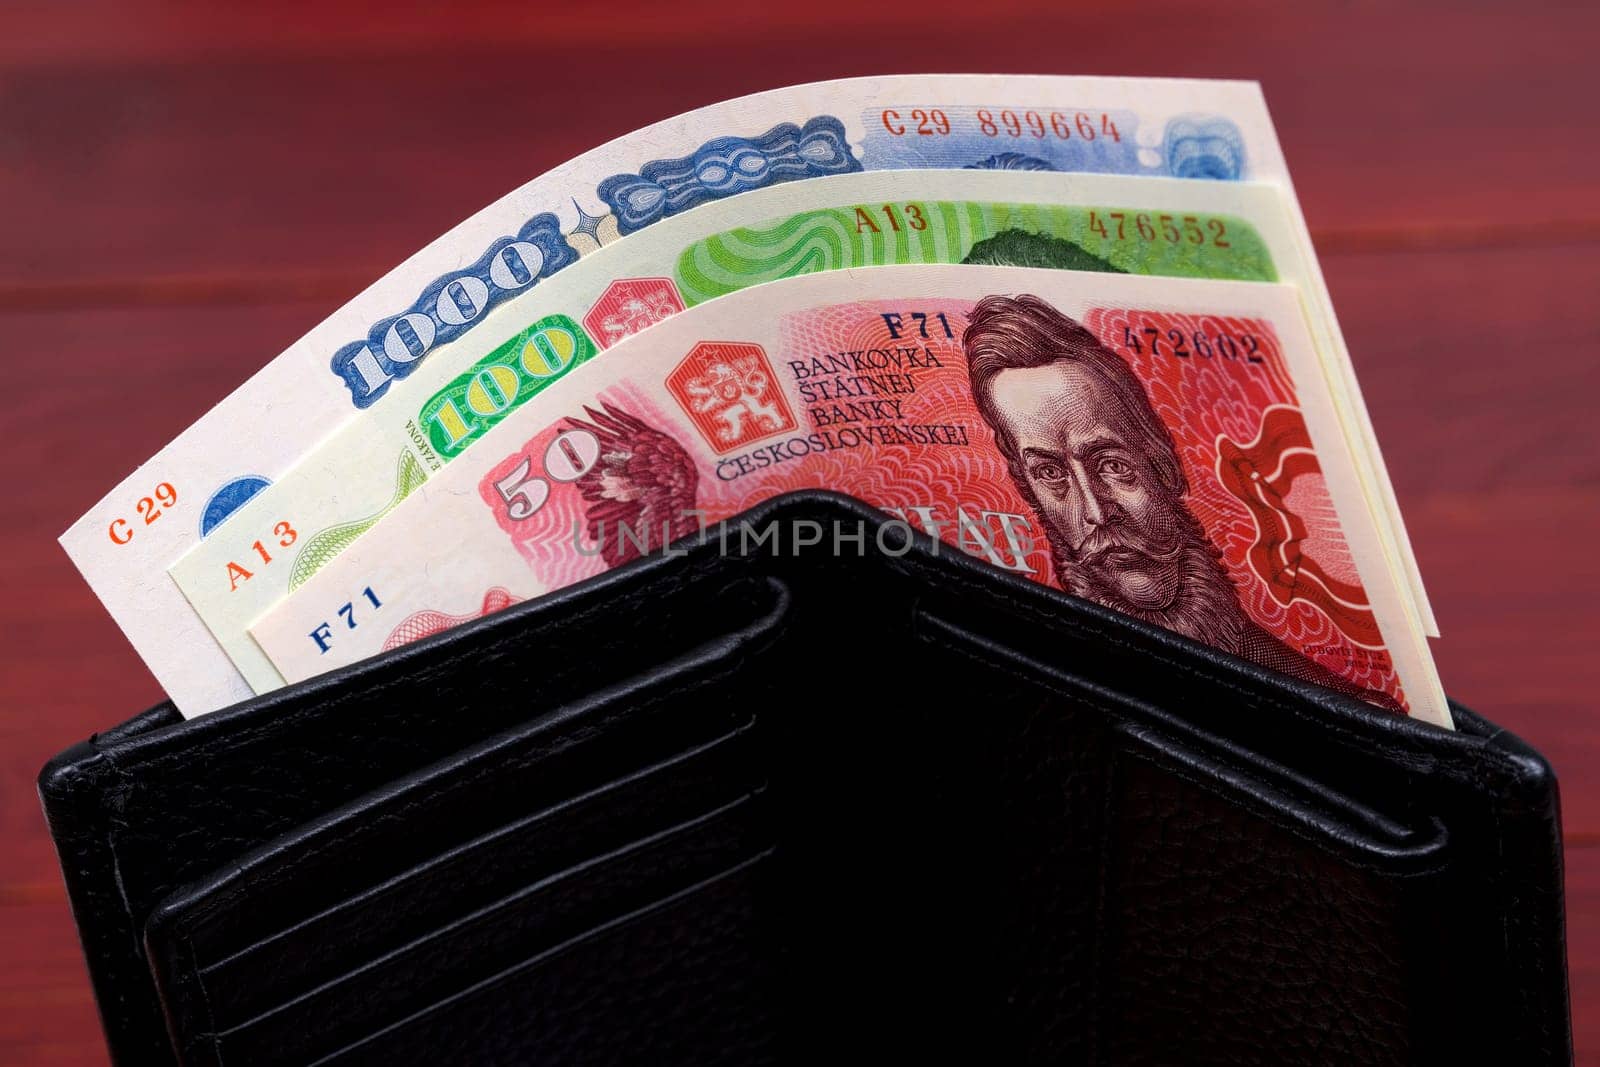 Czechoslovak koruna in the black wallet by johan10